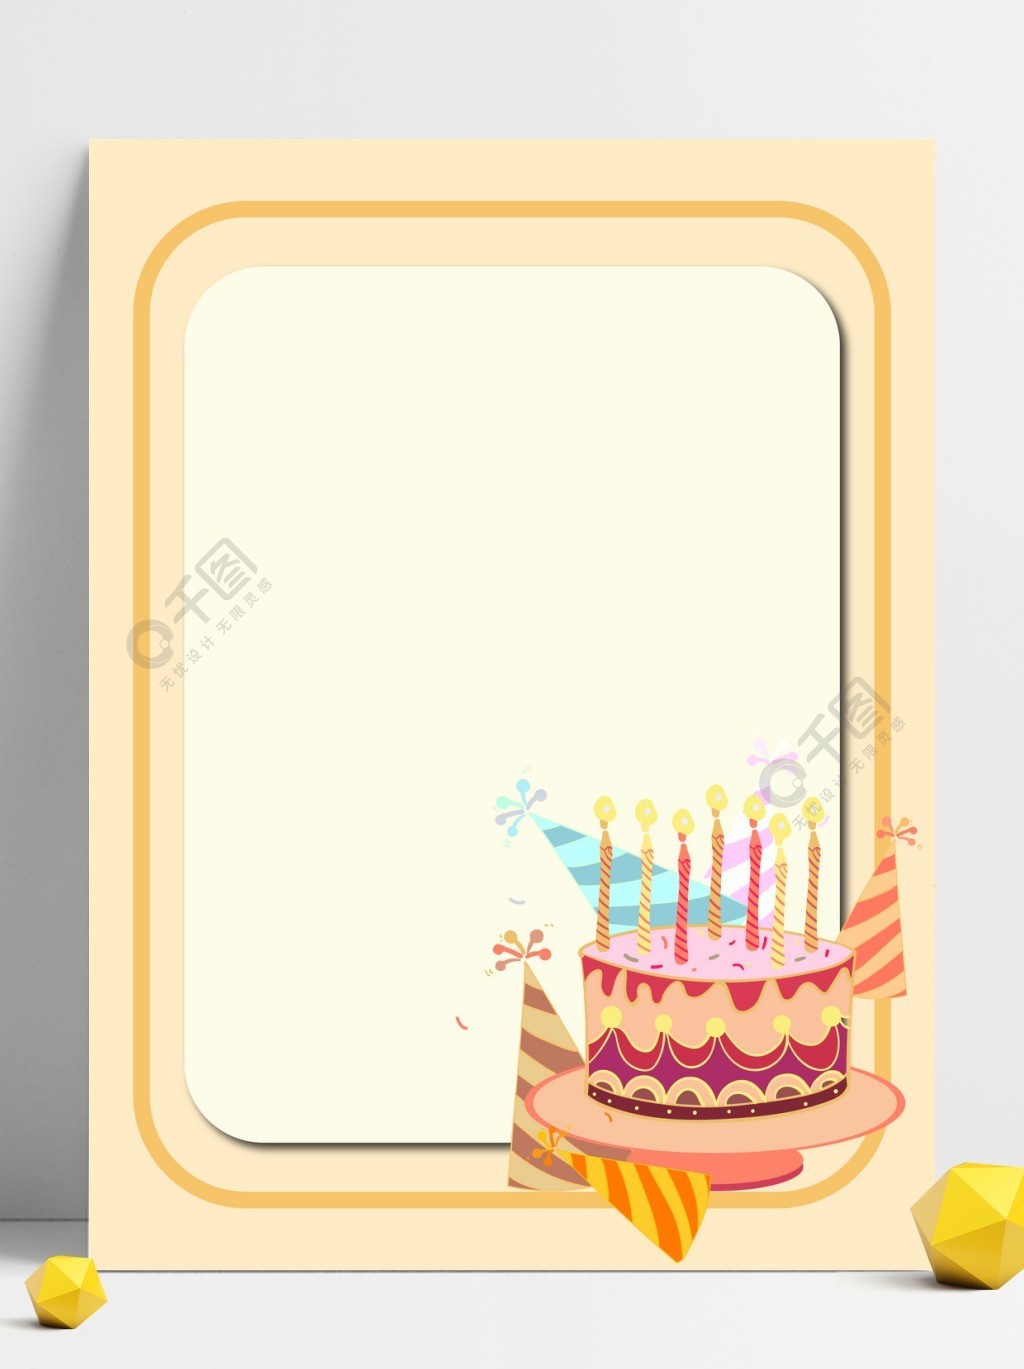 卡通蛋糕生日背景1年前发布